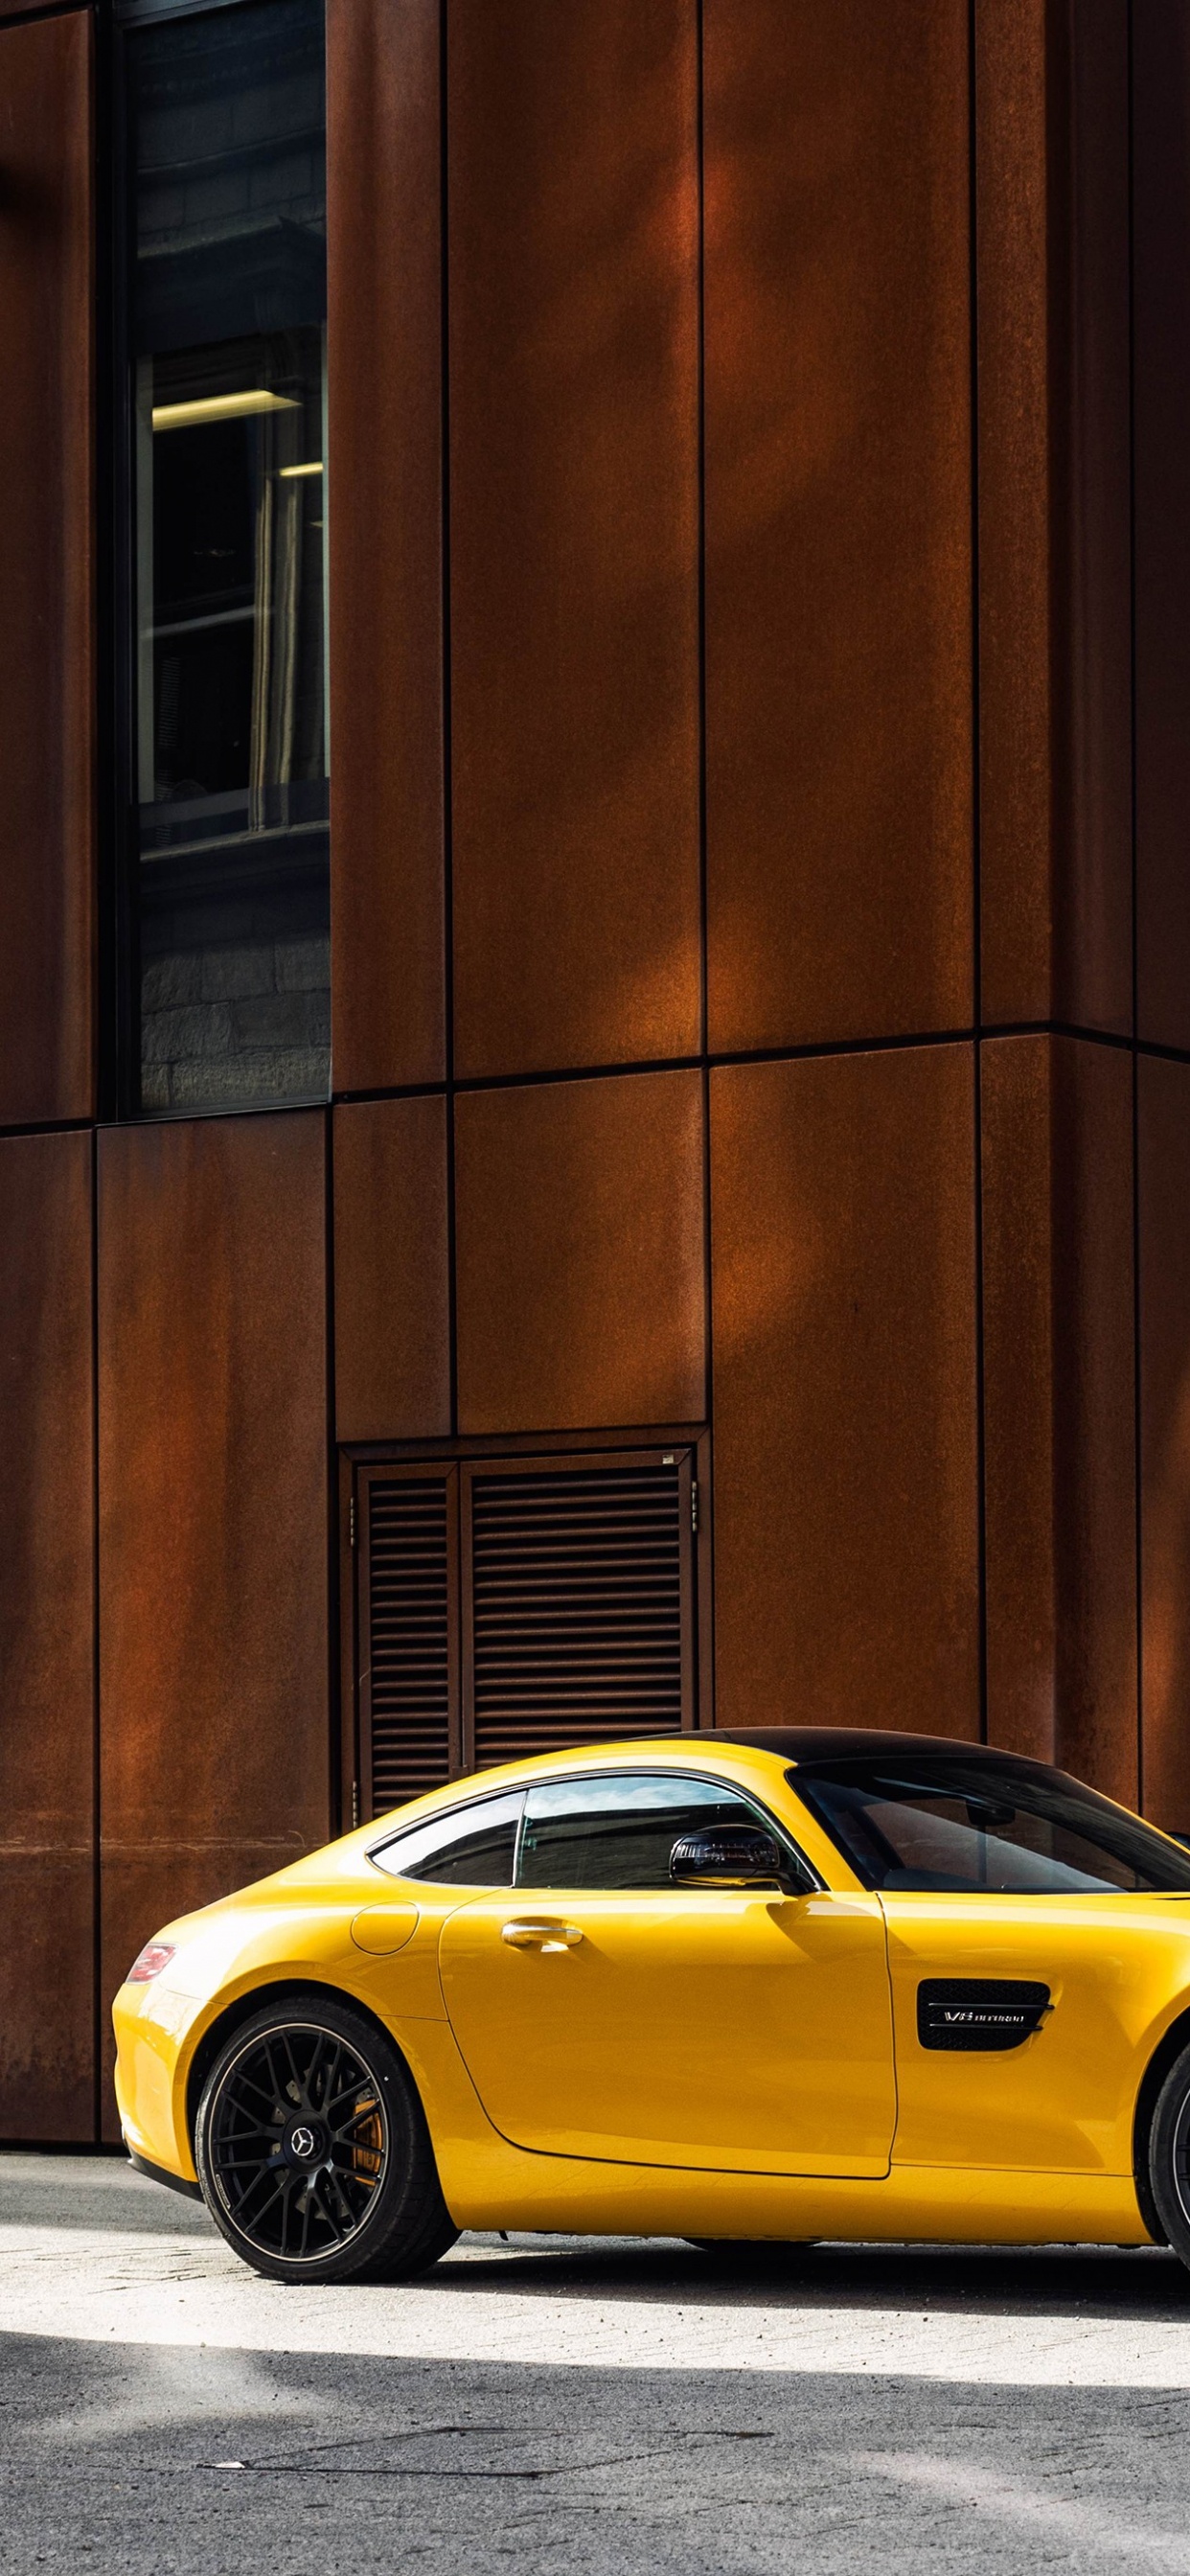 Gelber Porsche 911 Geparkt Neben Braunem Betongebäude Tagsüber. Wallpaper in 1242x2688 Resolution